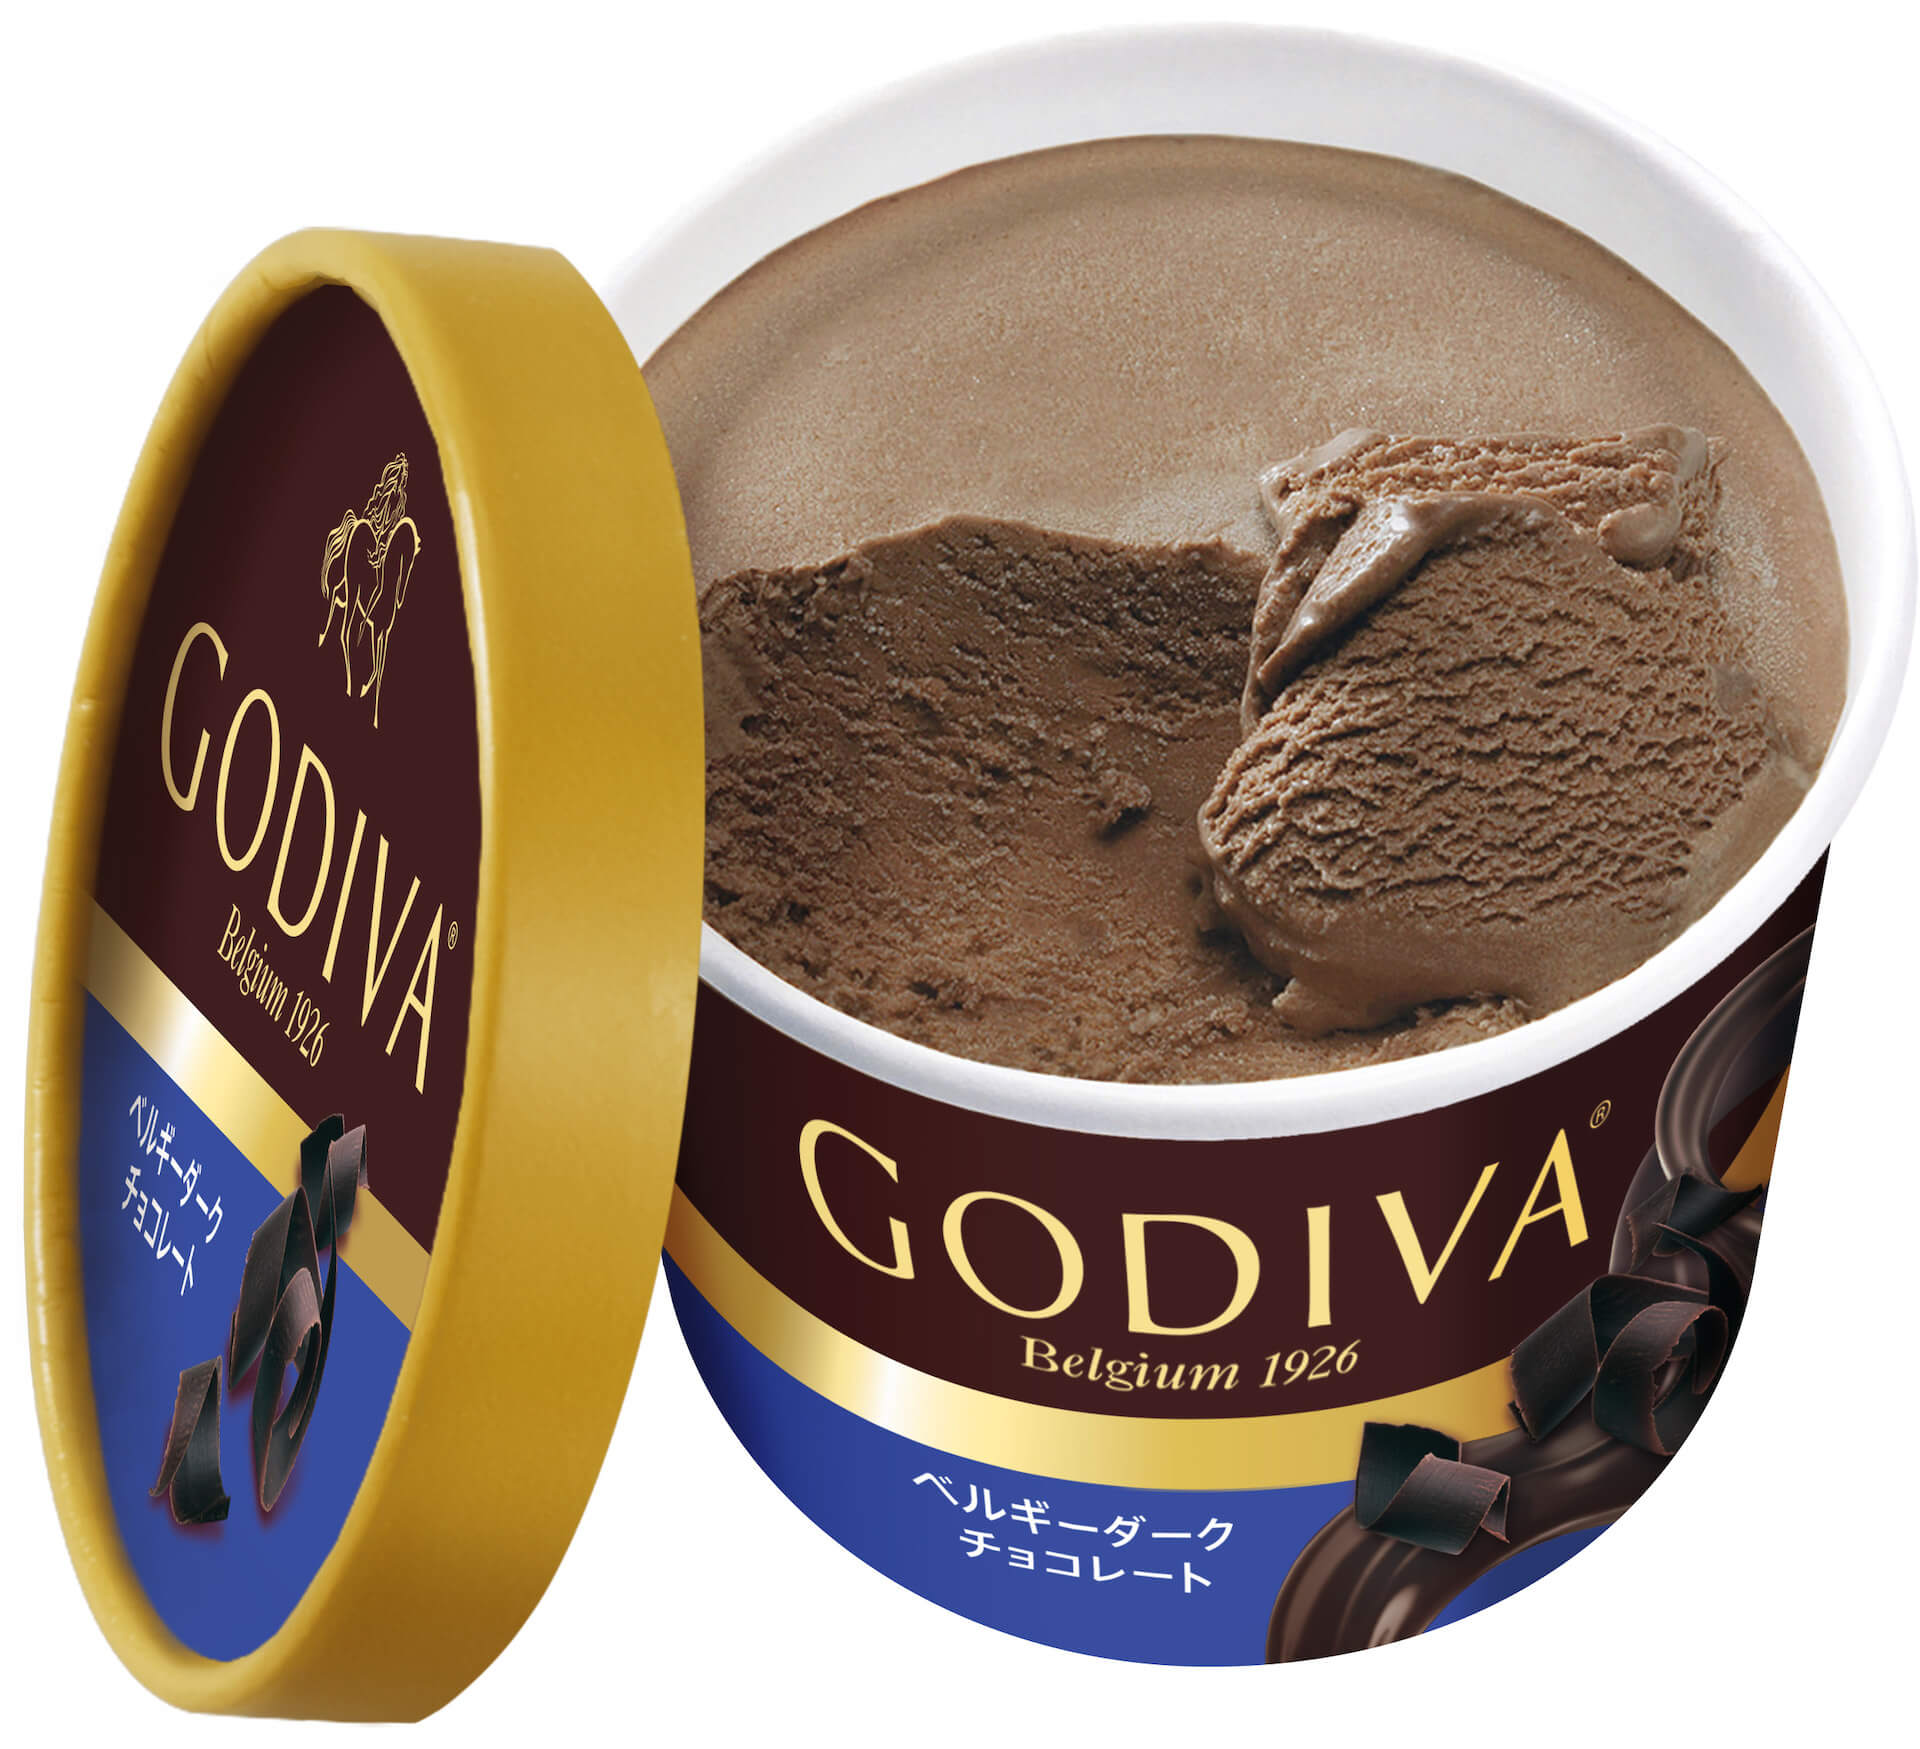 おうちで気軽にゴディバのチョコレートが楽しめる！ゴディバ『カップアイス』から新たなフレーバー5種類が登場 gourmet20201019_godiva_3